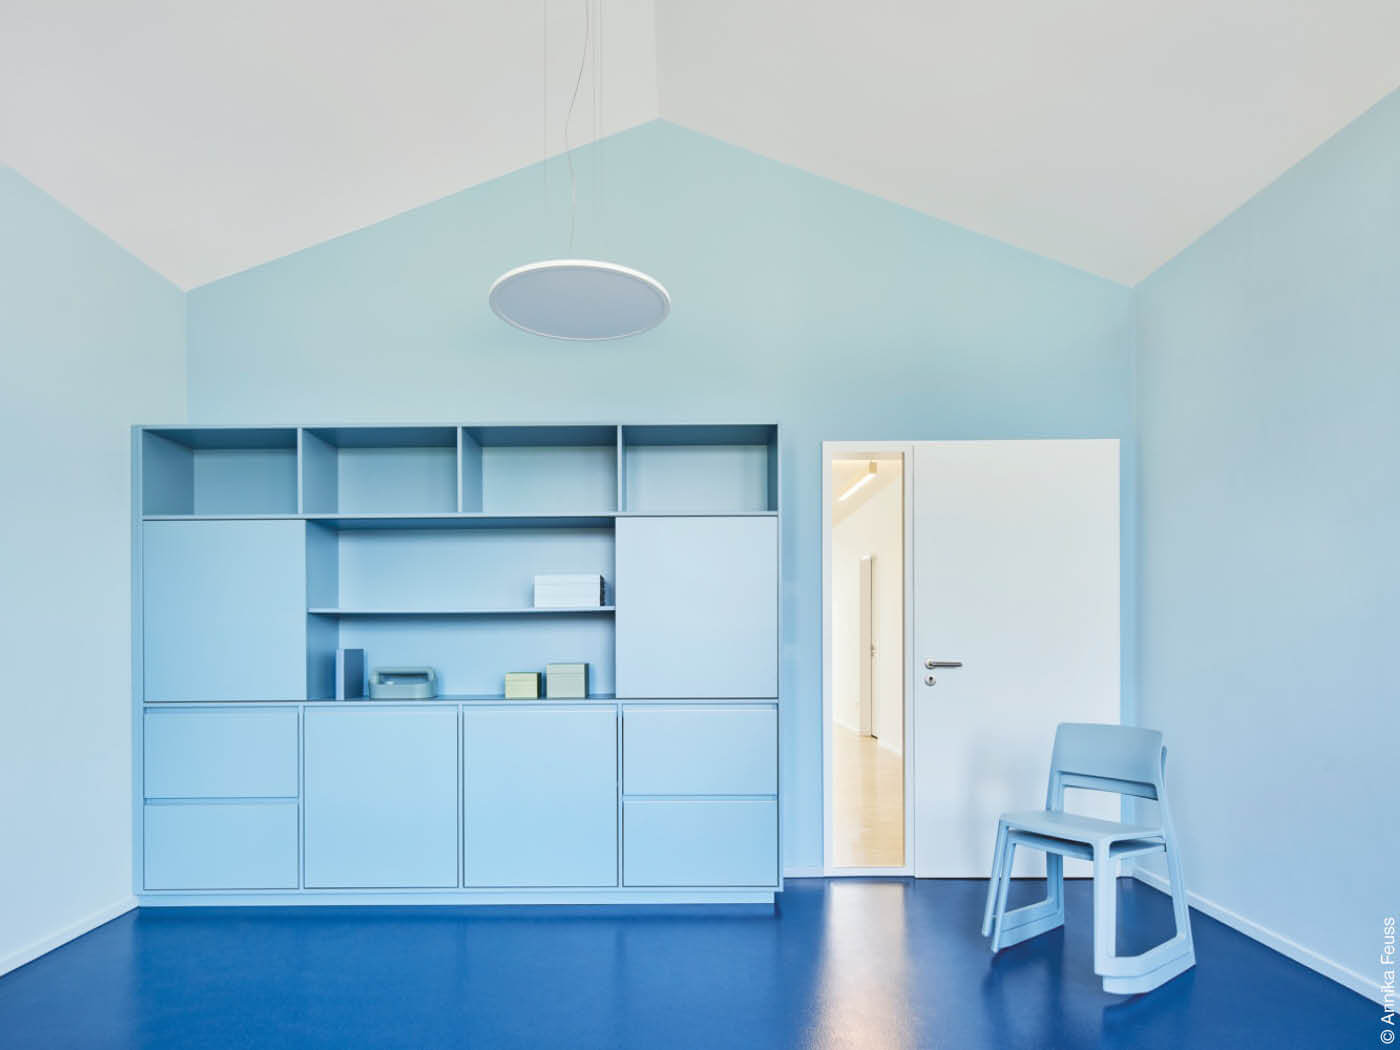 Klinik mit blauem Innenraum von Heiner Kolde, bkp